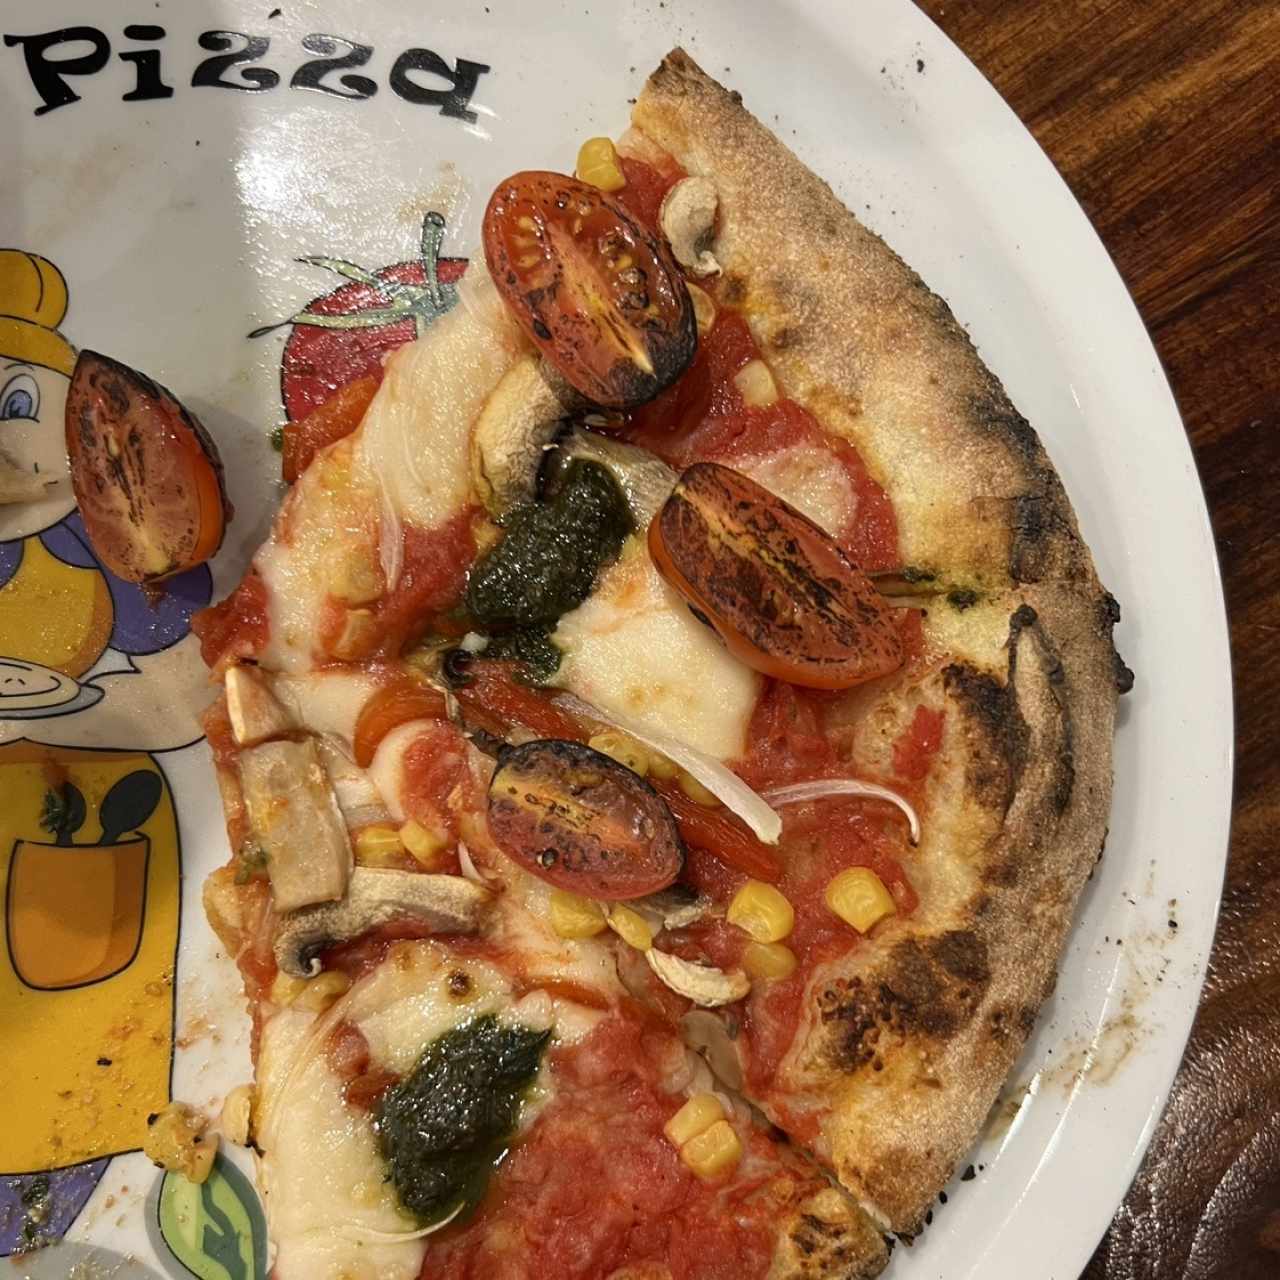 Pizza planti, veggie lover!!